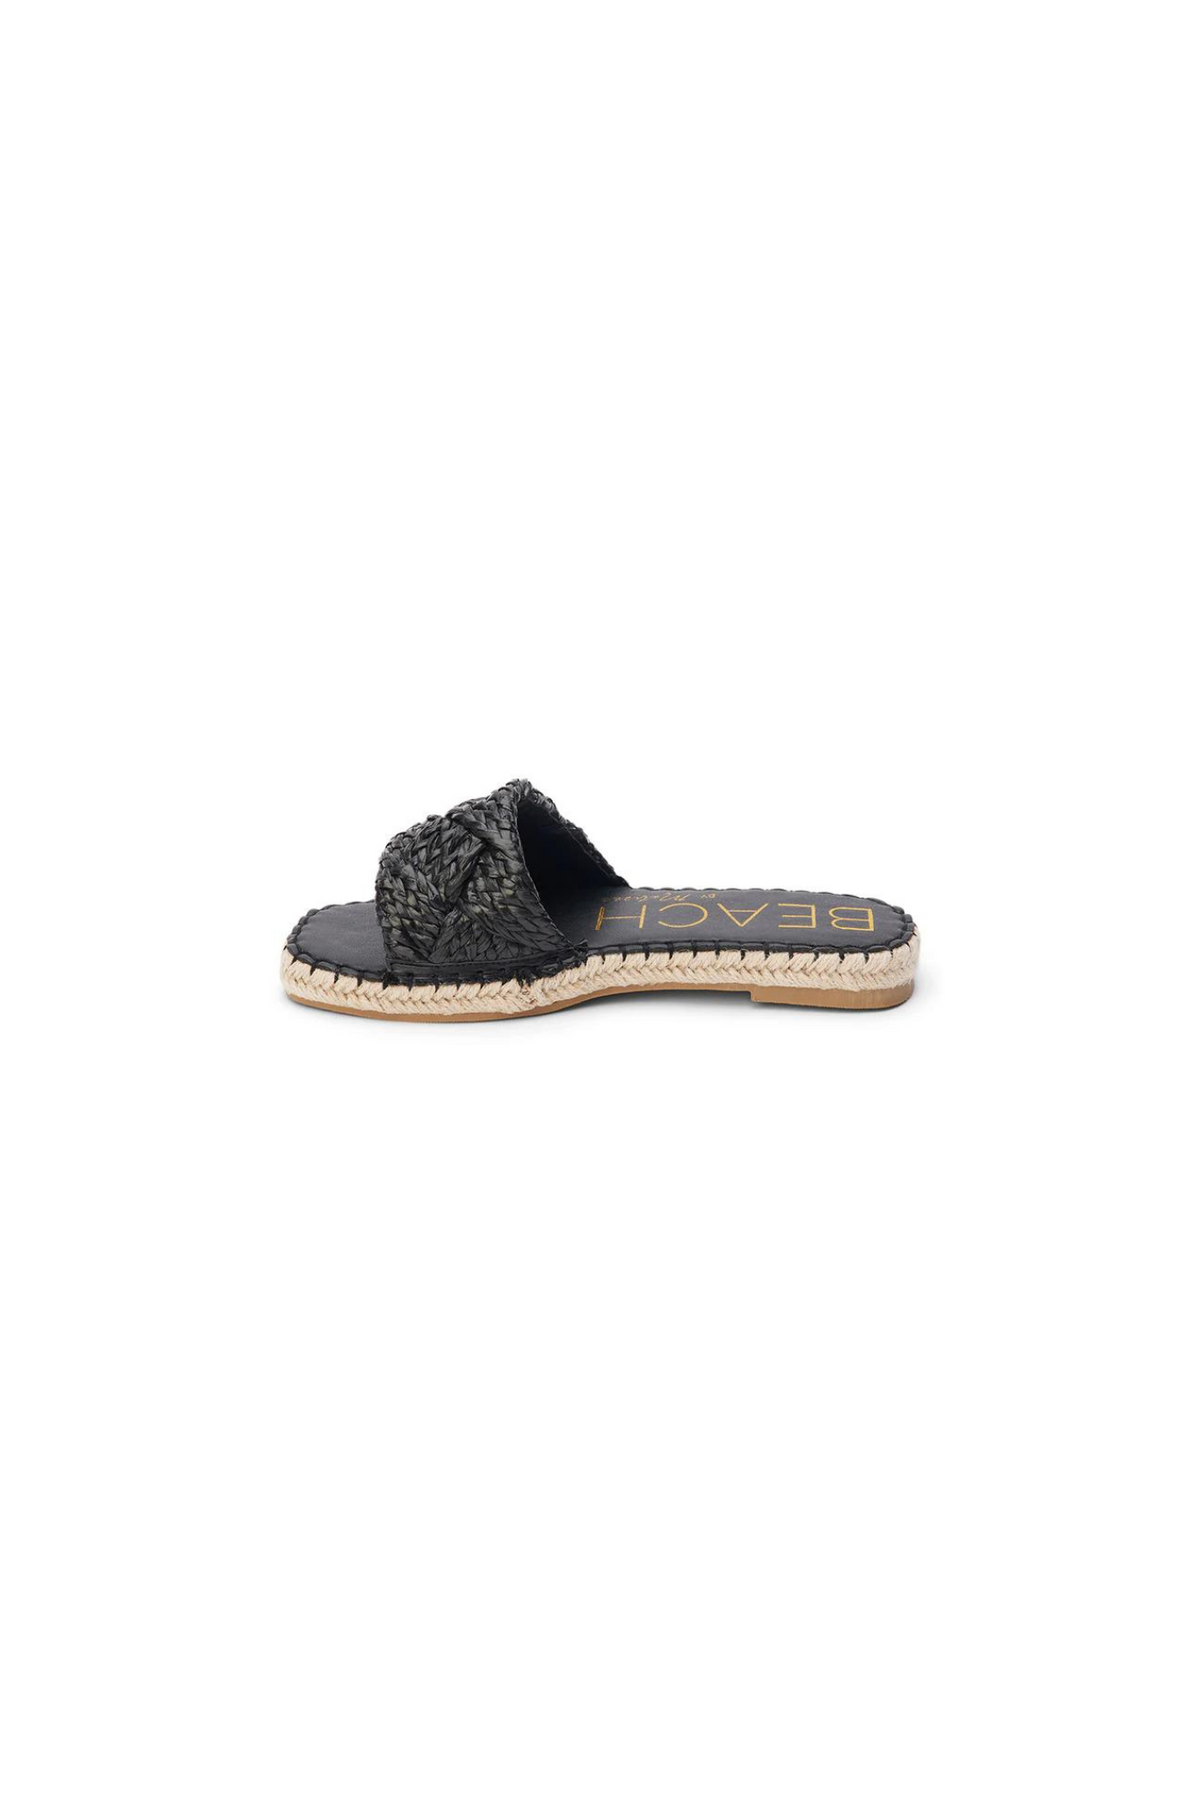 Matisse Beach | Black Ivy Sandals | Sweetest Stitch Online Boutique